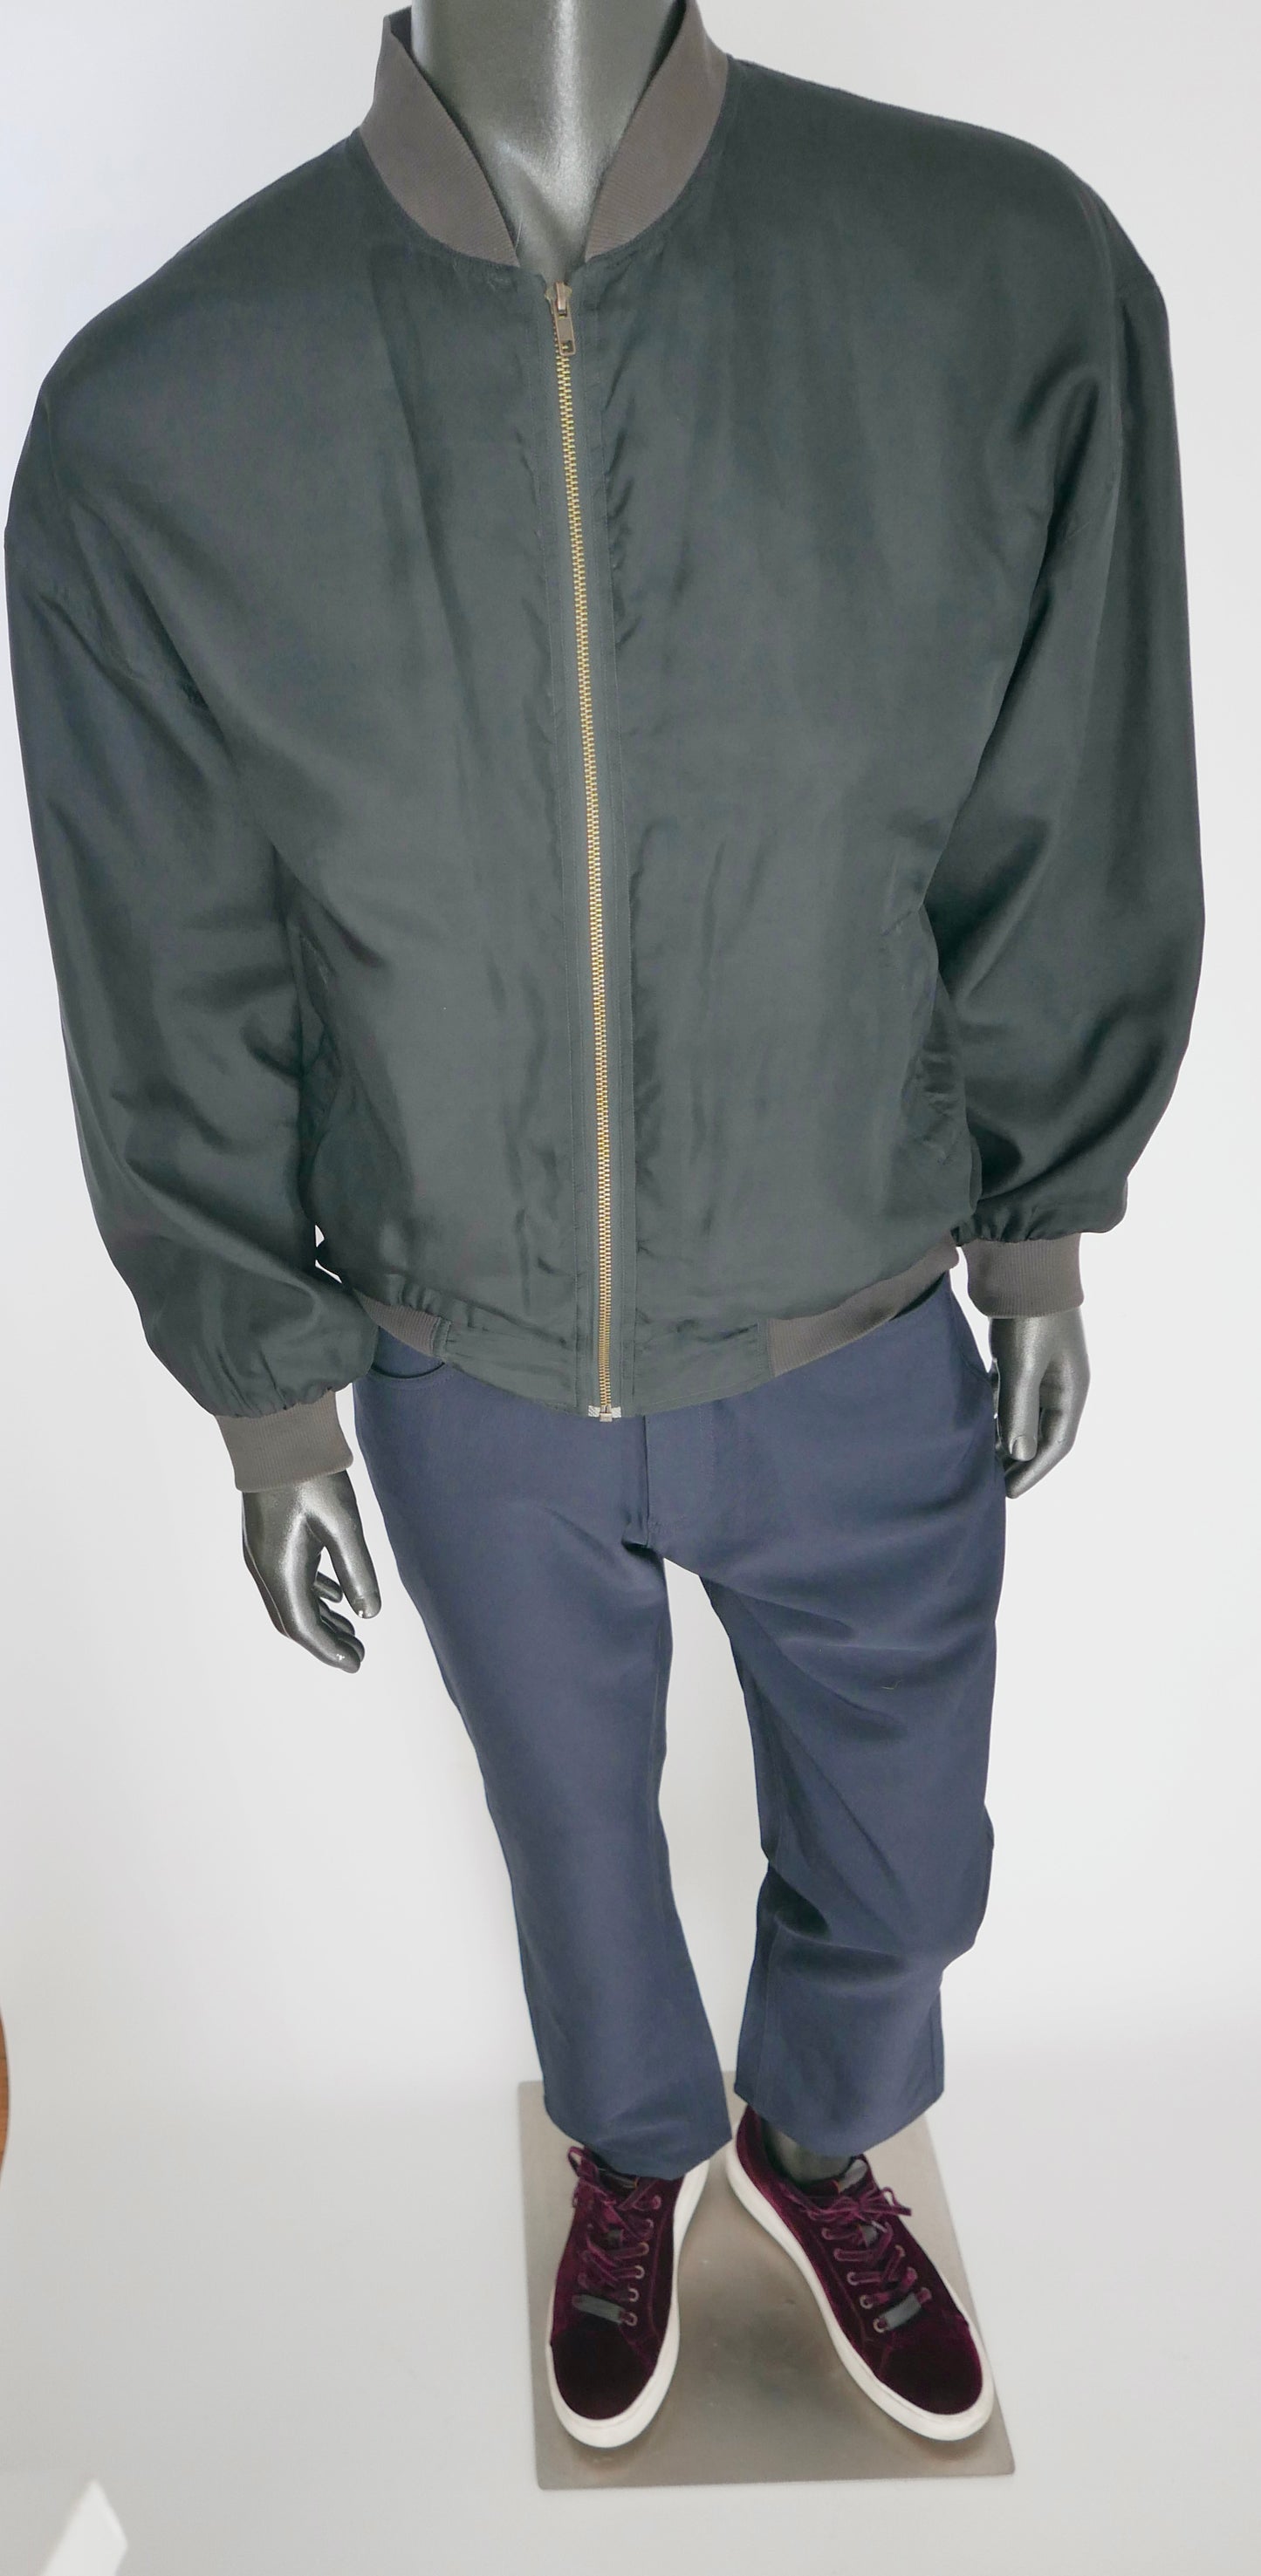 Montage Silk Bomber Jacket, Size Large